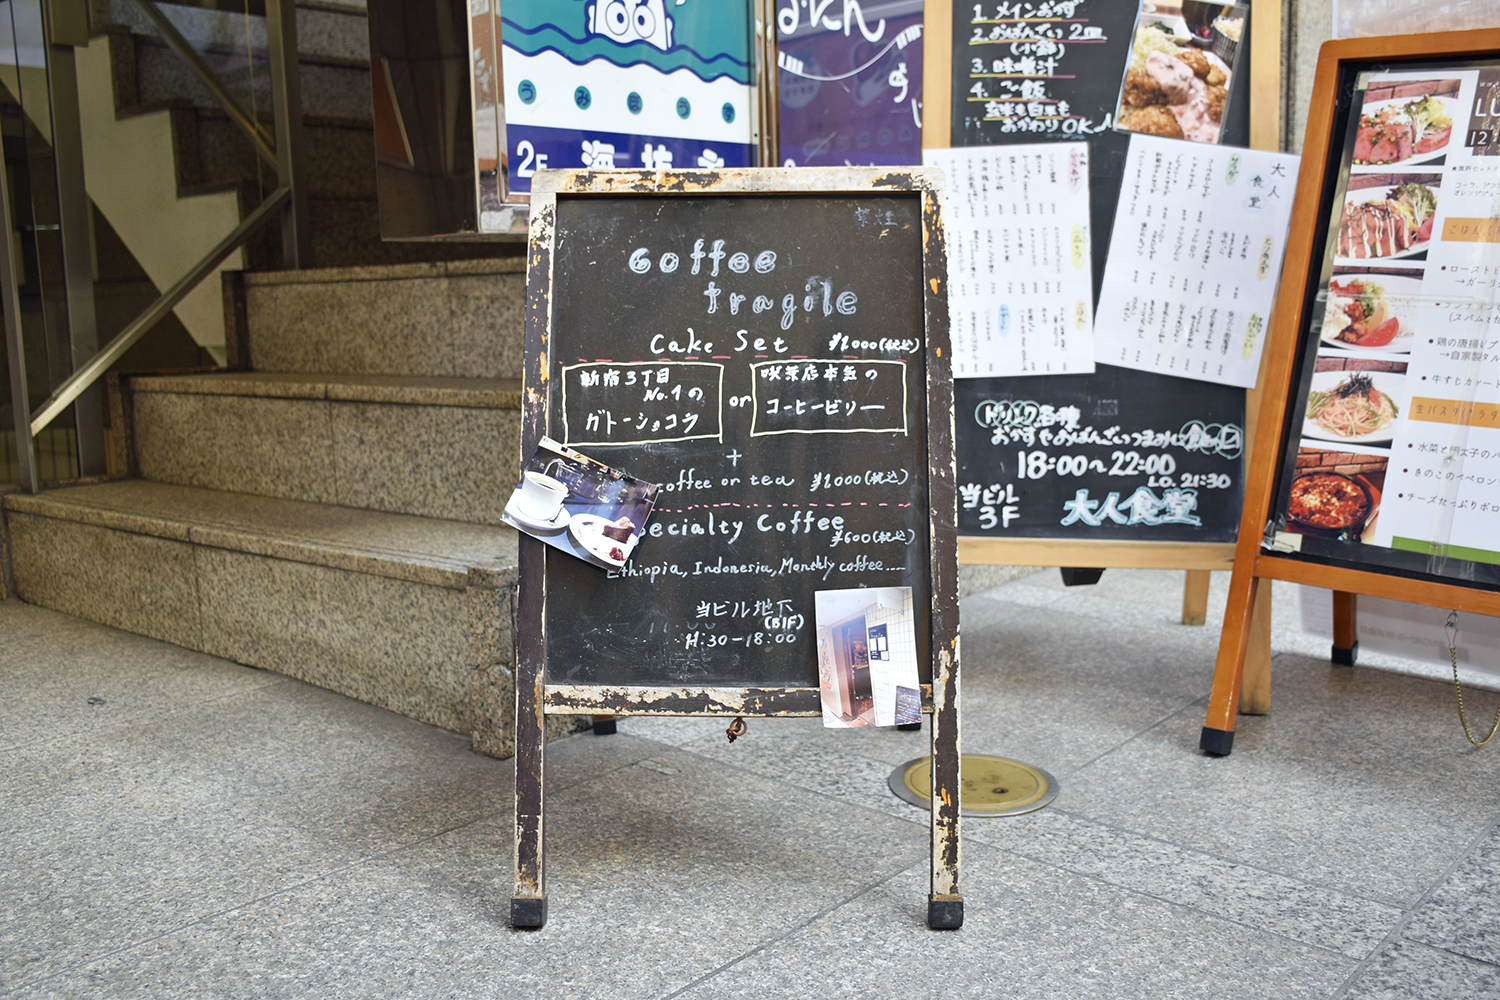 ビル入口に置かれた『coffee fragile』の立て看板。「新宿3丁目NO.1のガトーショコラ」の文字が目を引く。